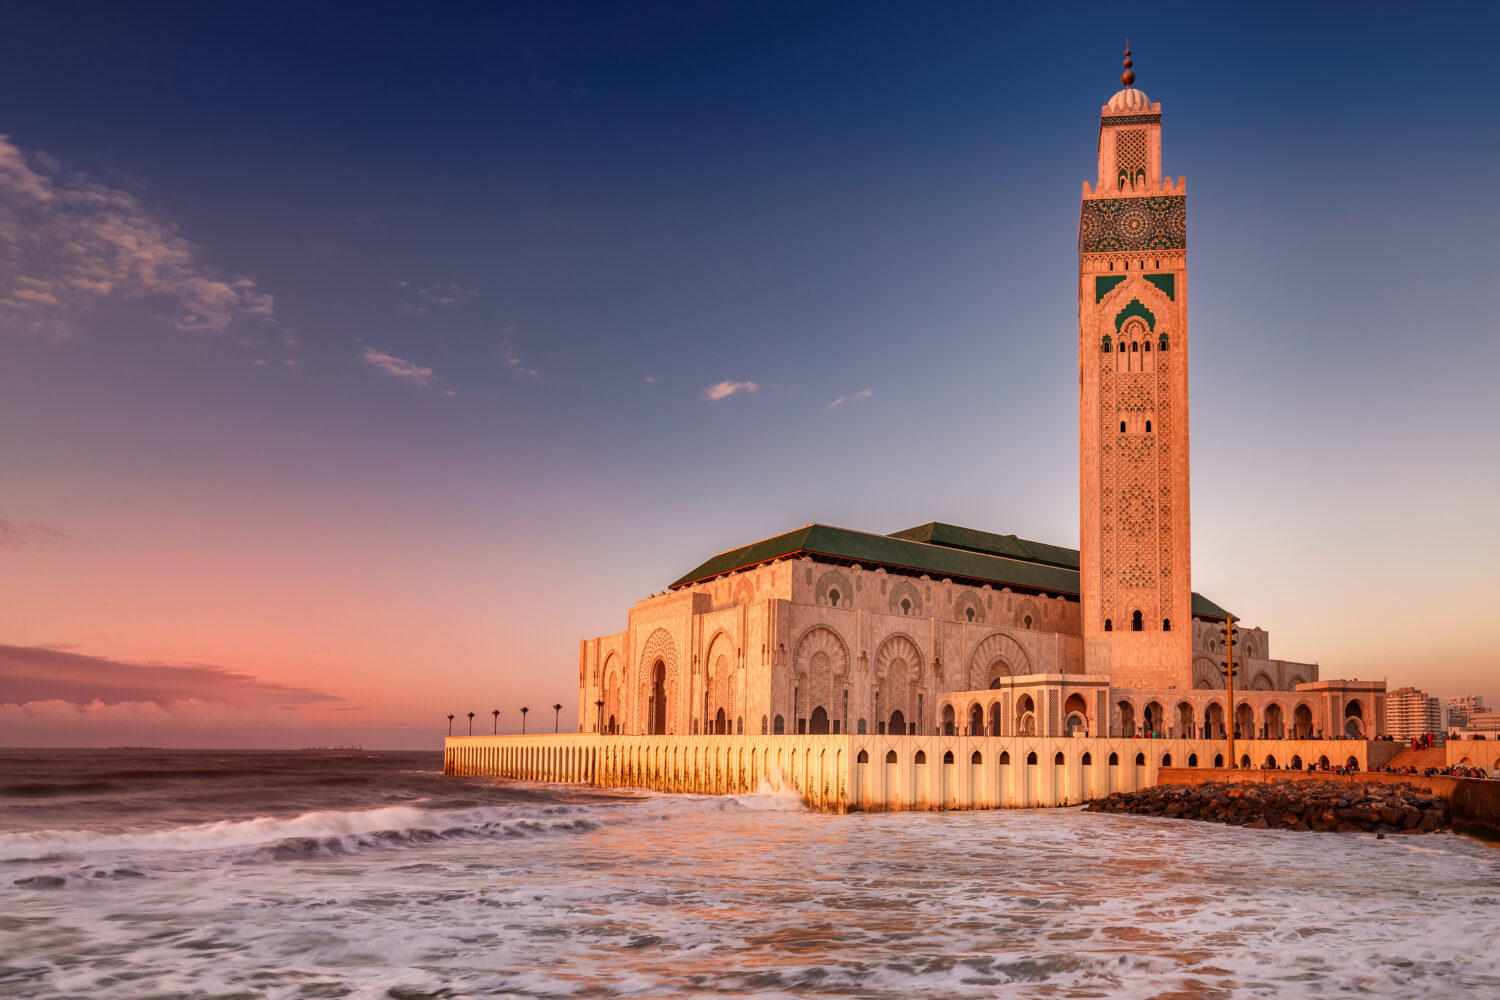 from Casablanca